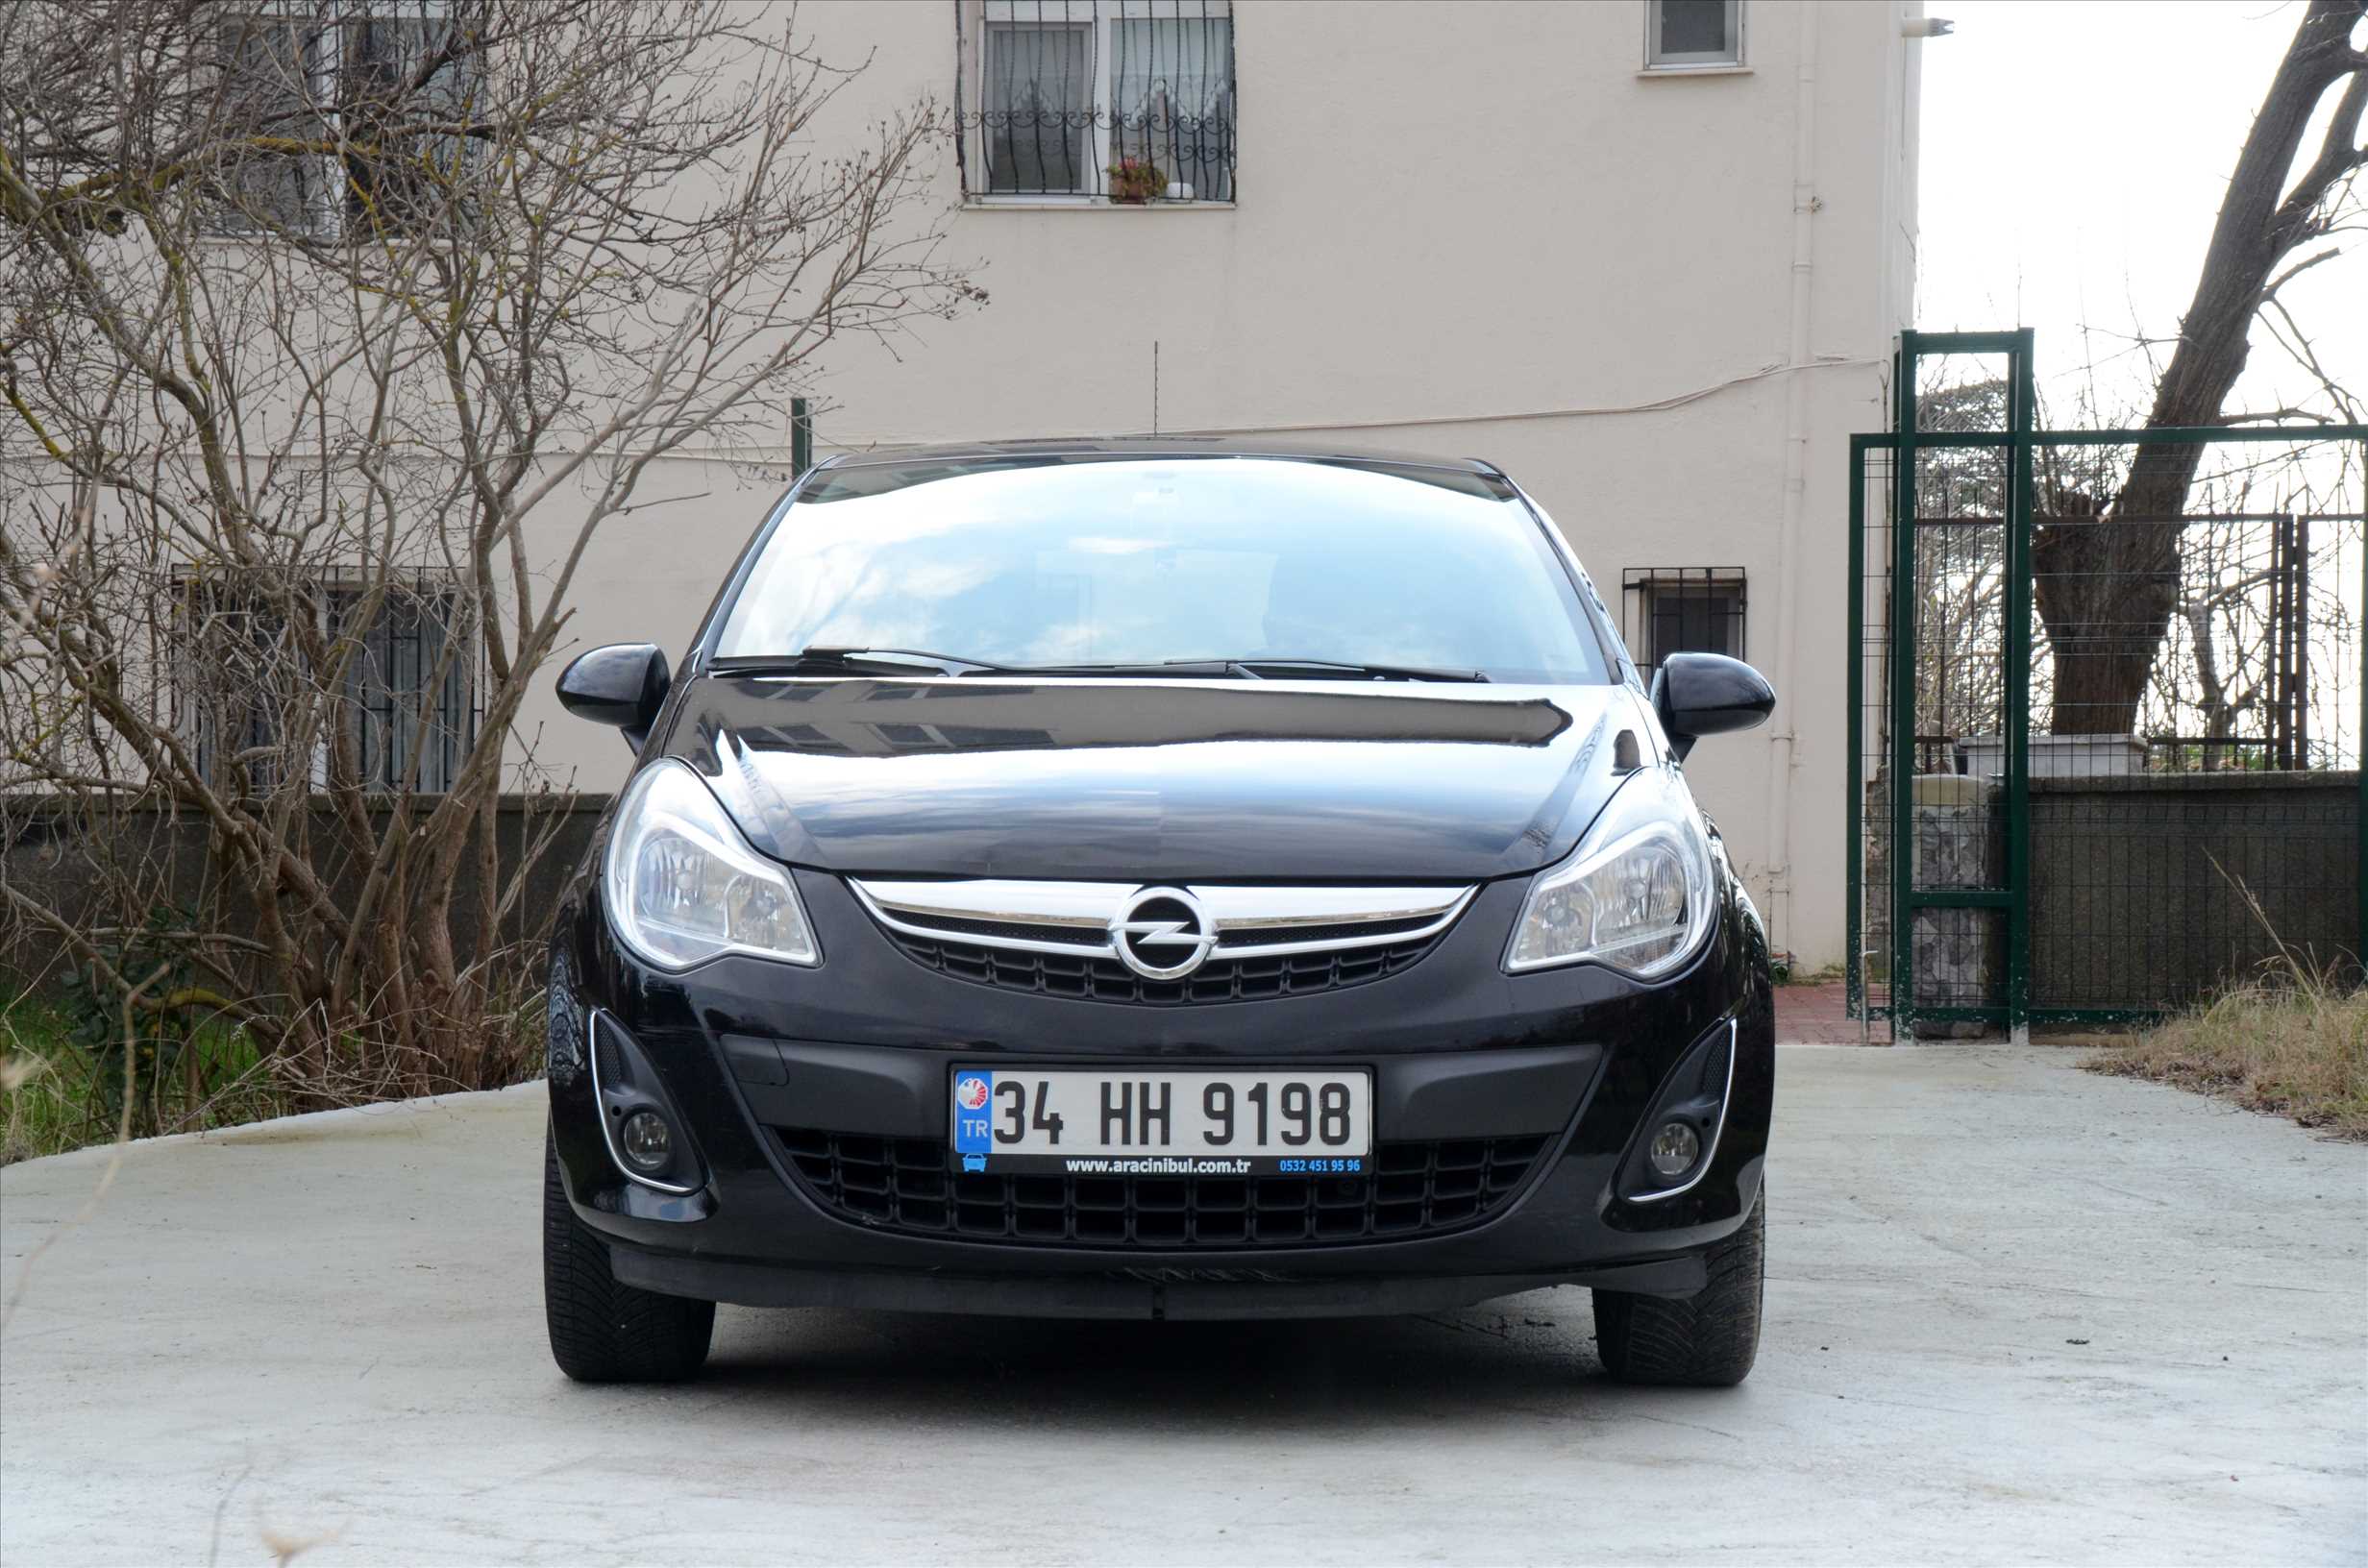   Opel Corsa 1.4 Twinport Enjoy TAM OTO. HASAR KAYITSIZ DEĞİŞENSİZ (Aracımız Satılmıştır)